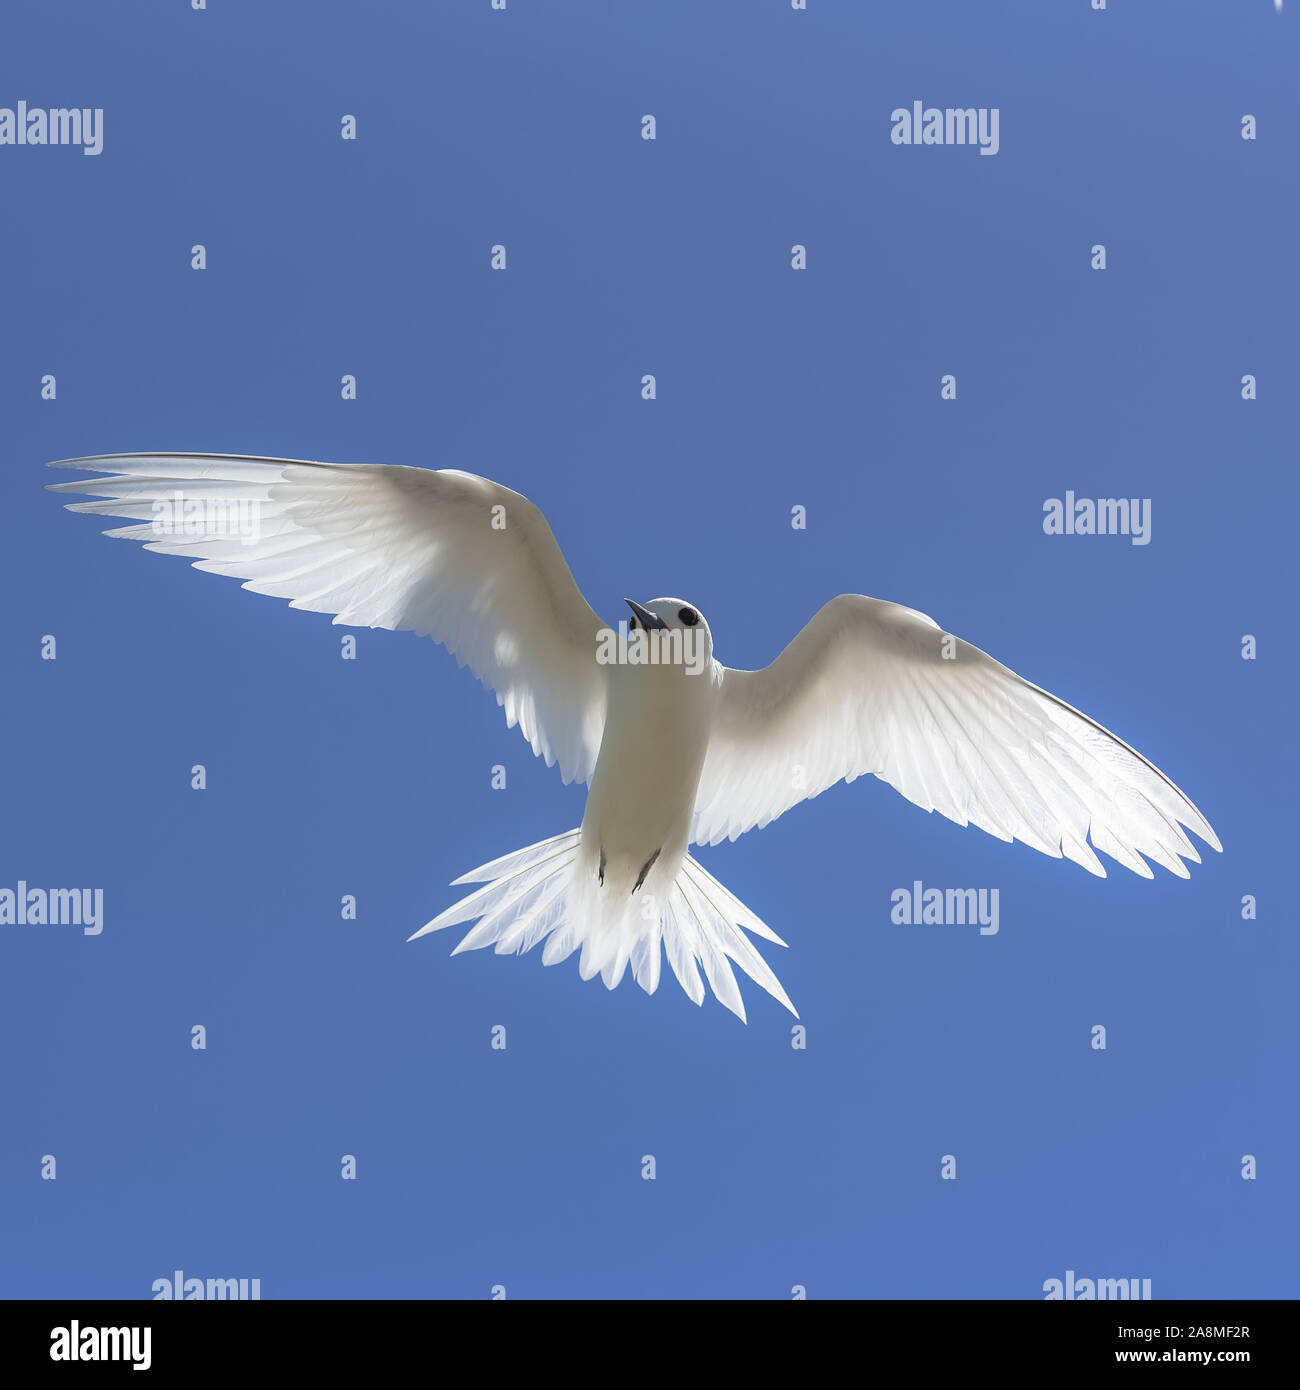 Blanc, magnifique oiseau blanc volant dans le ciel bleu, symbole de paix Banque D'Images